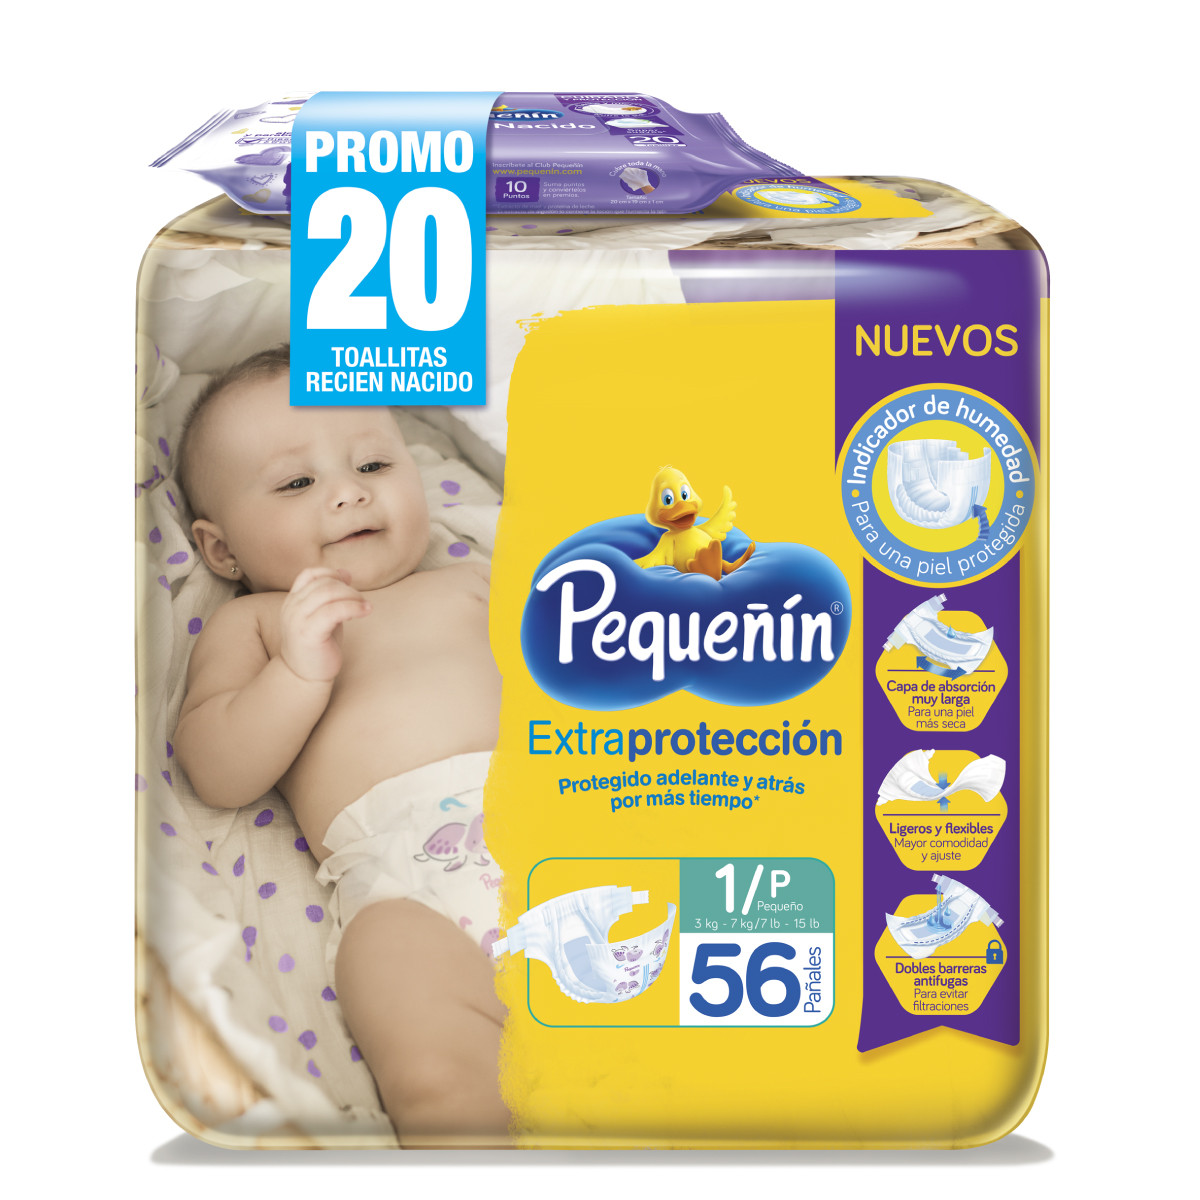 Imagen Inactiva Pañales Pequeñín Extraprotección Etapa 1 x 56 und + Toallitas Recién Nacido x 20 und 1